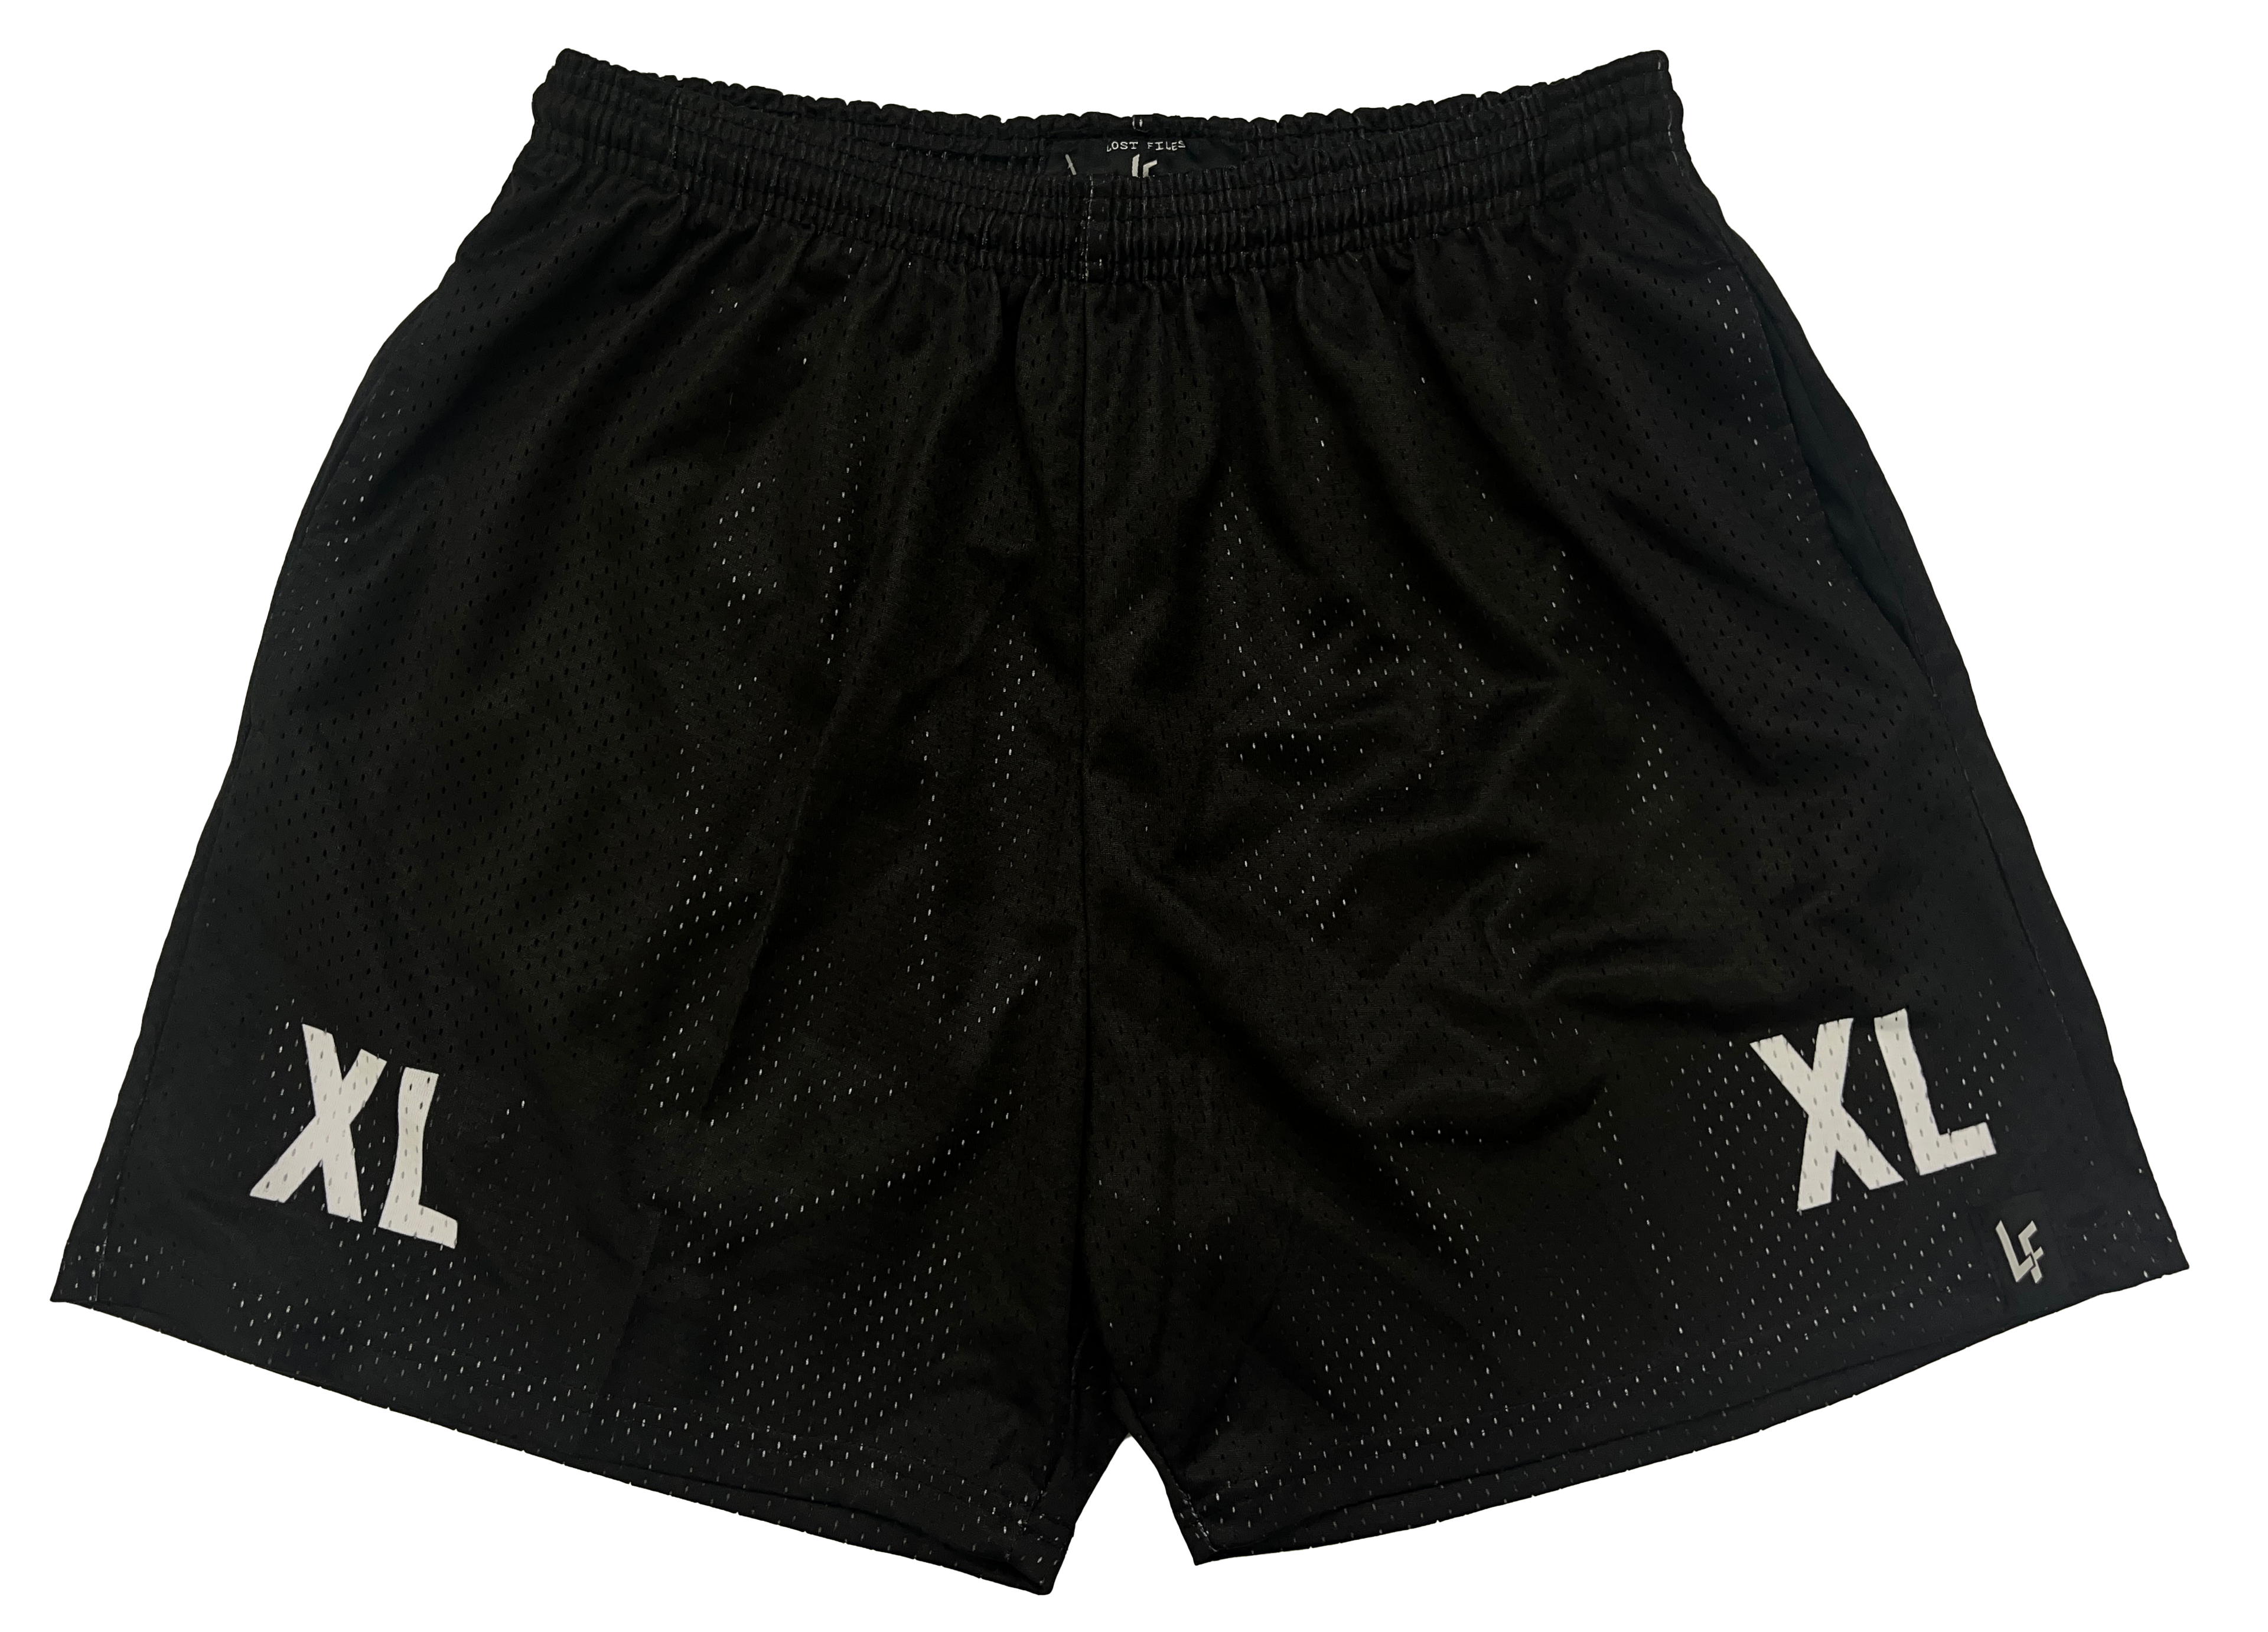 Sizing Sample Shorts - Size XL